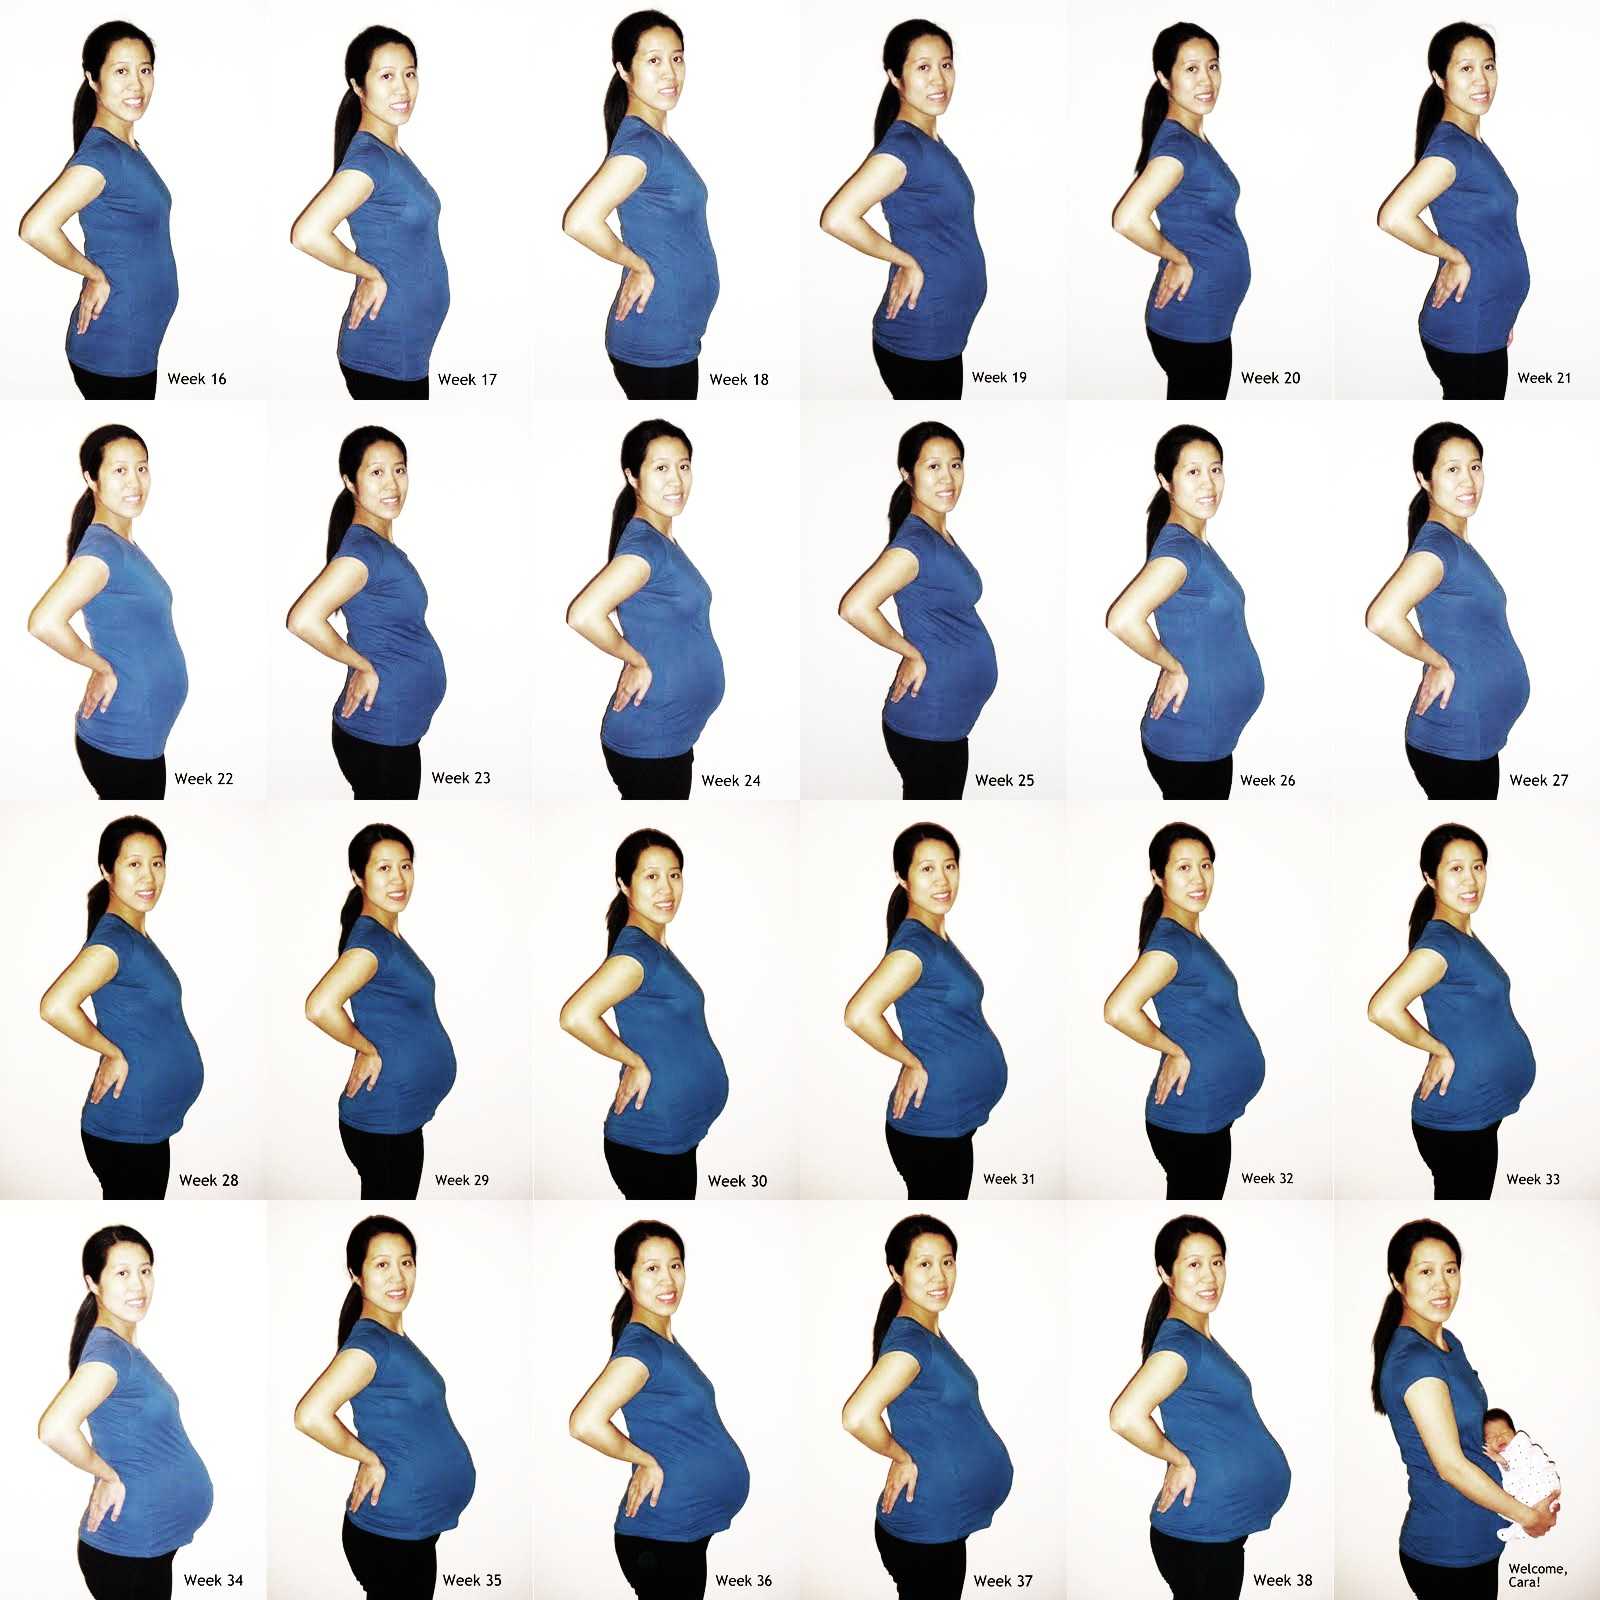 Маленький живот при беременности: причины, диагностика и поводы для обращения к врачу